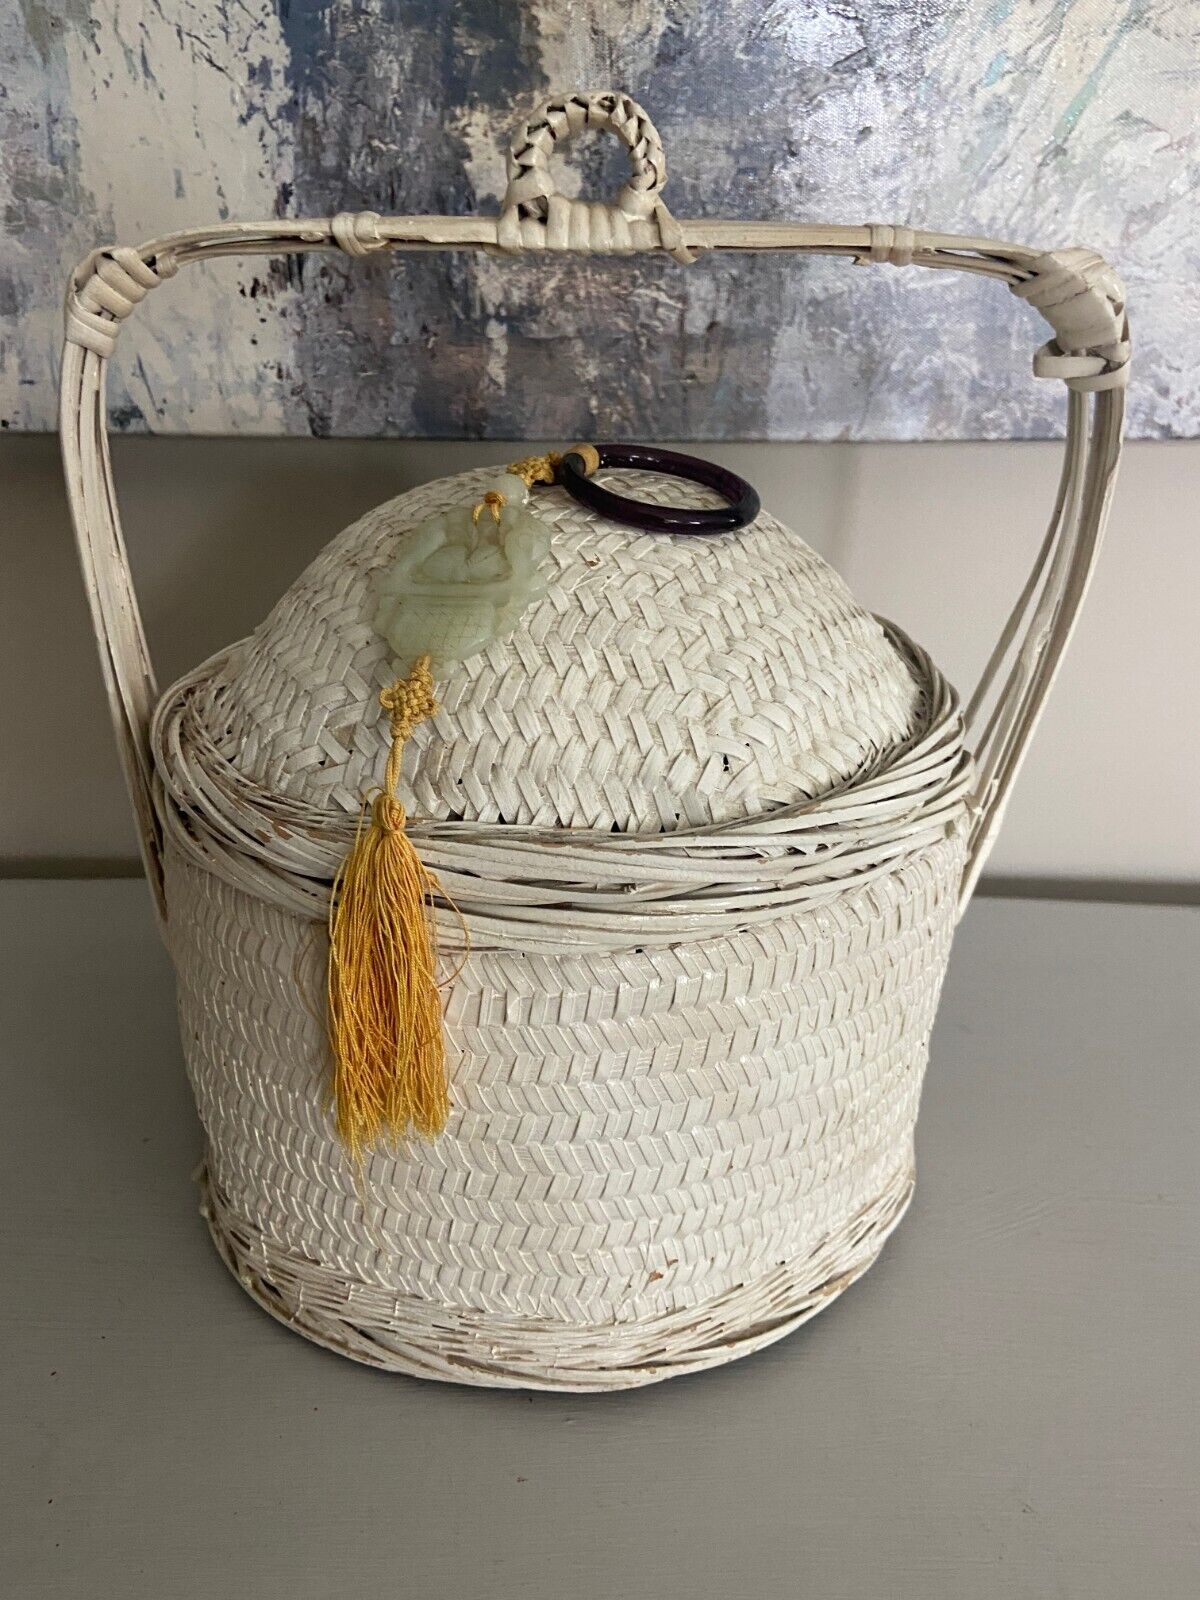 Antique/Vintage Chinese Wedding Basket - White w/ Jade tassel